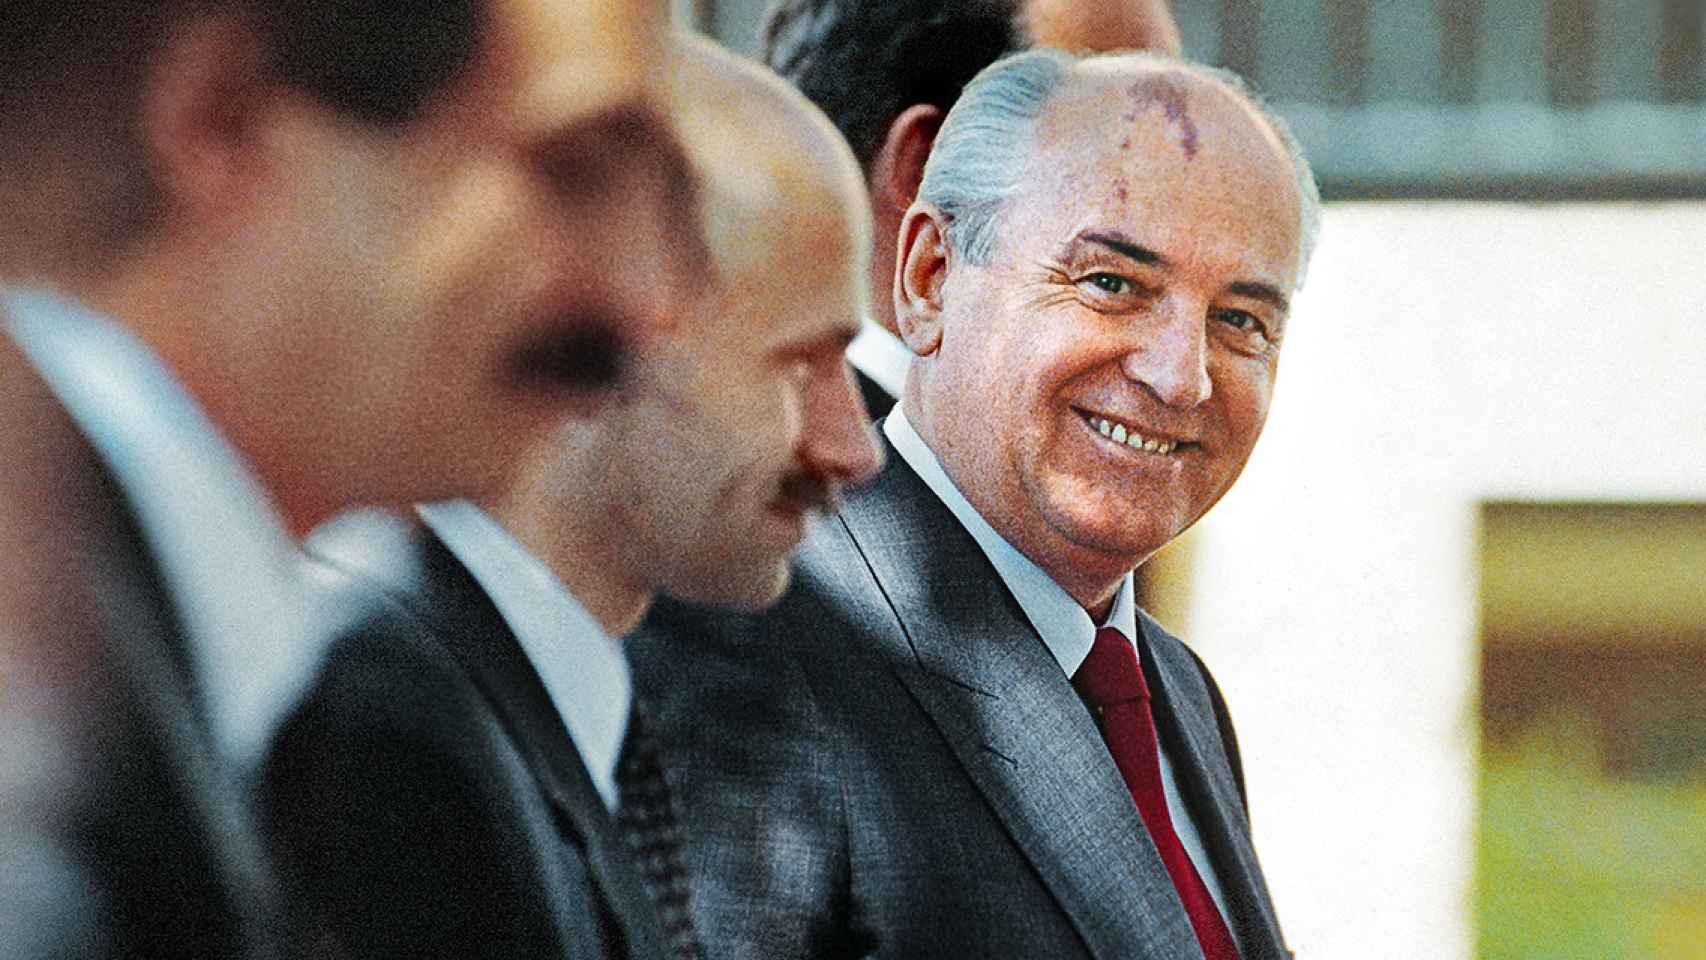 El último presidente de la Unión Soviética, Mijaíl Gorbachov, en una imagen de archivo - CHRIS HARDY / ZUMA PRESS / CONTACTOPHOTO - Only For Use In Spain